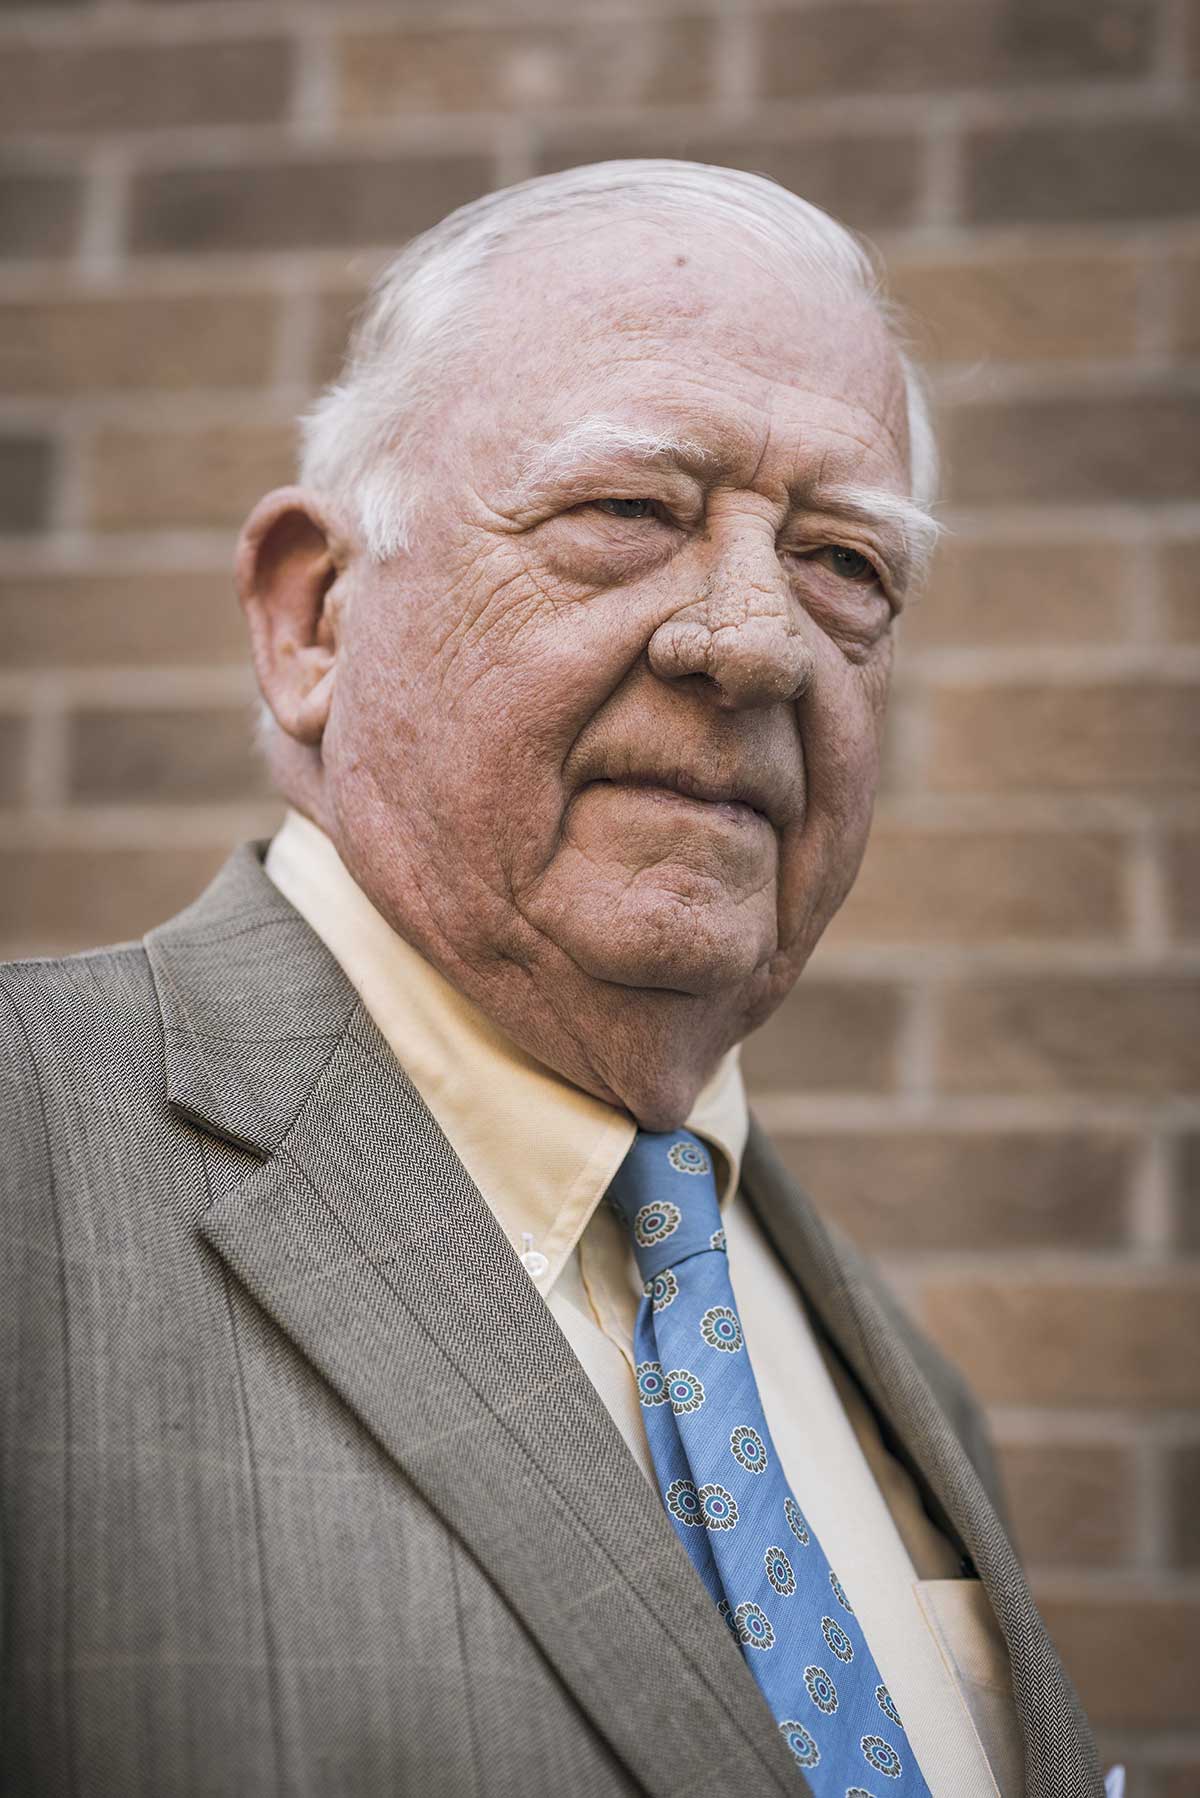 Charles R. Ledbetter, Lawyer at Ledbetter Law Firm